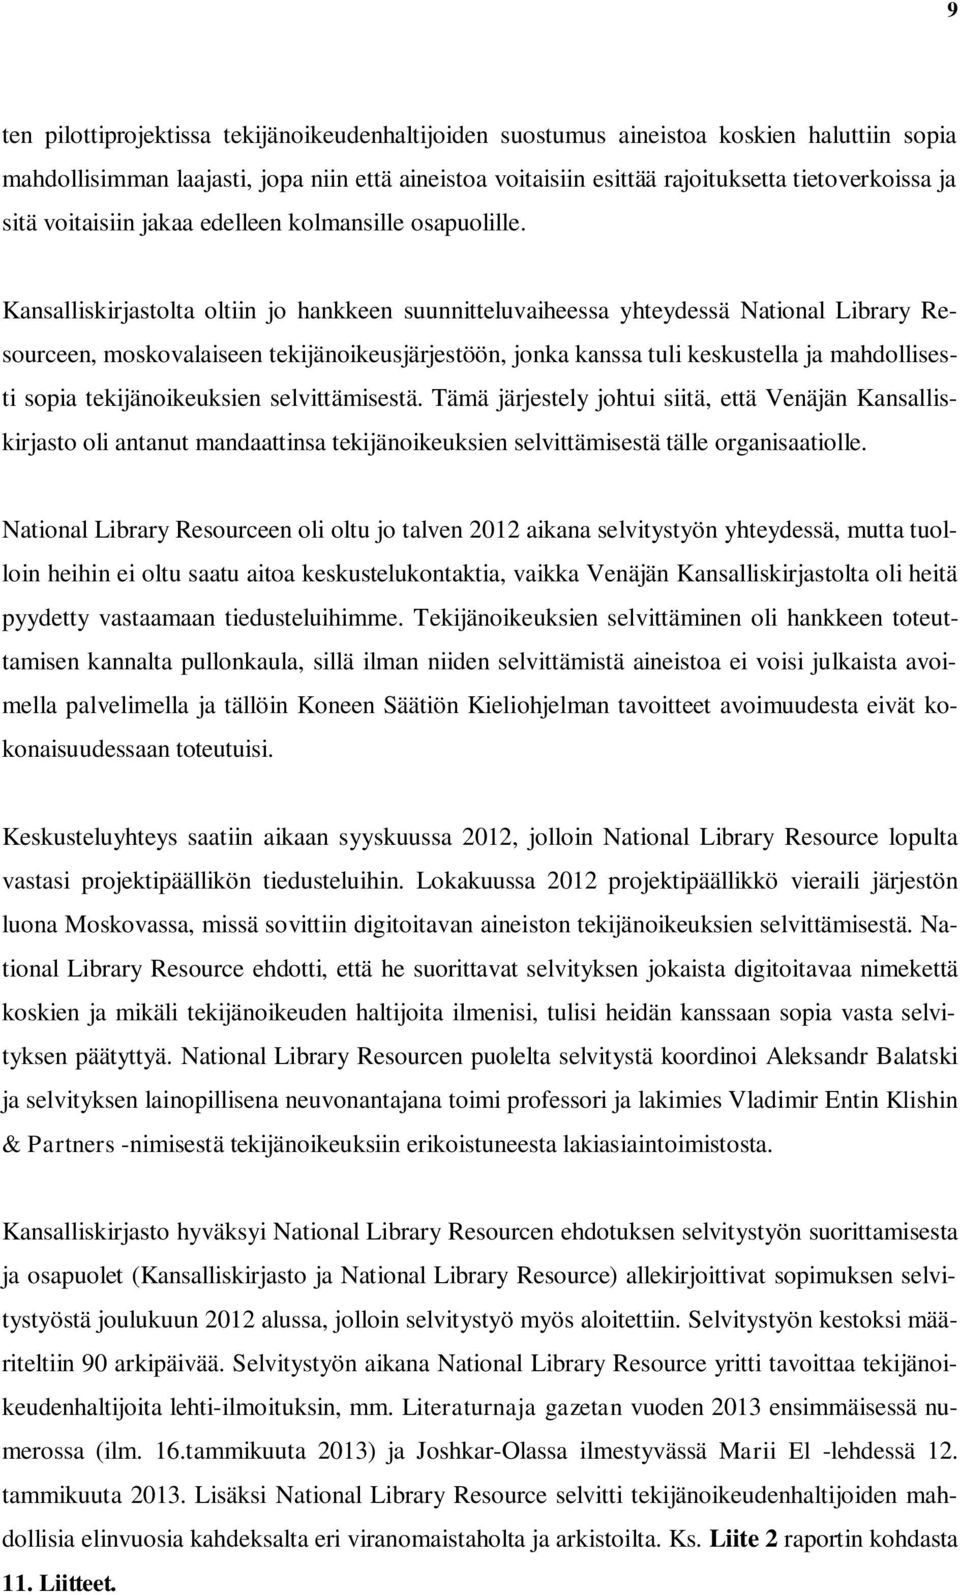 Kansalliskirjastolta oltiin jo hankkeen suunnitteluvaiheessa yhteydessä National Library Resourceen, moskovalaiseen tekijänoikeusjärjestöön, jonka kanssa tuli keskustella ja mahdollisesti sopia